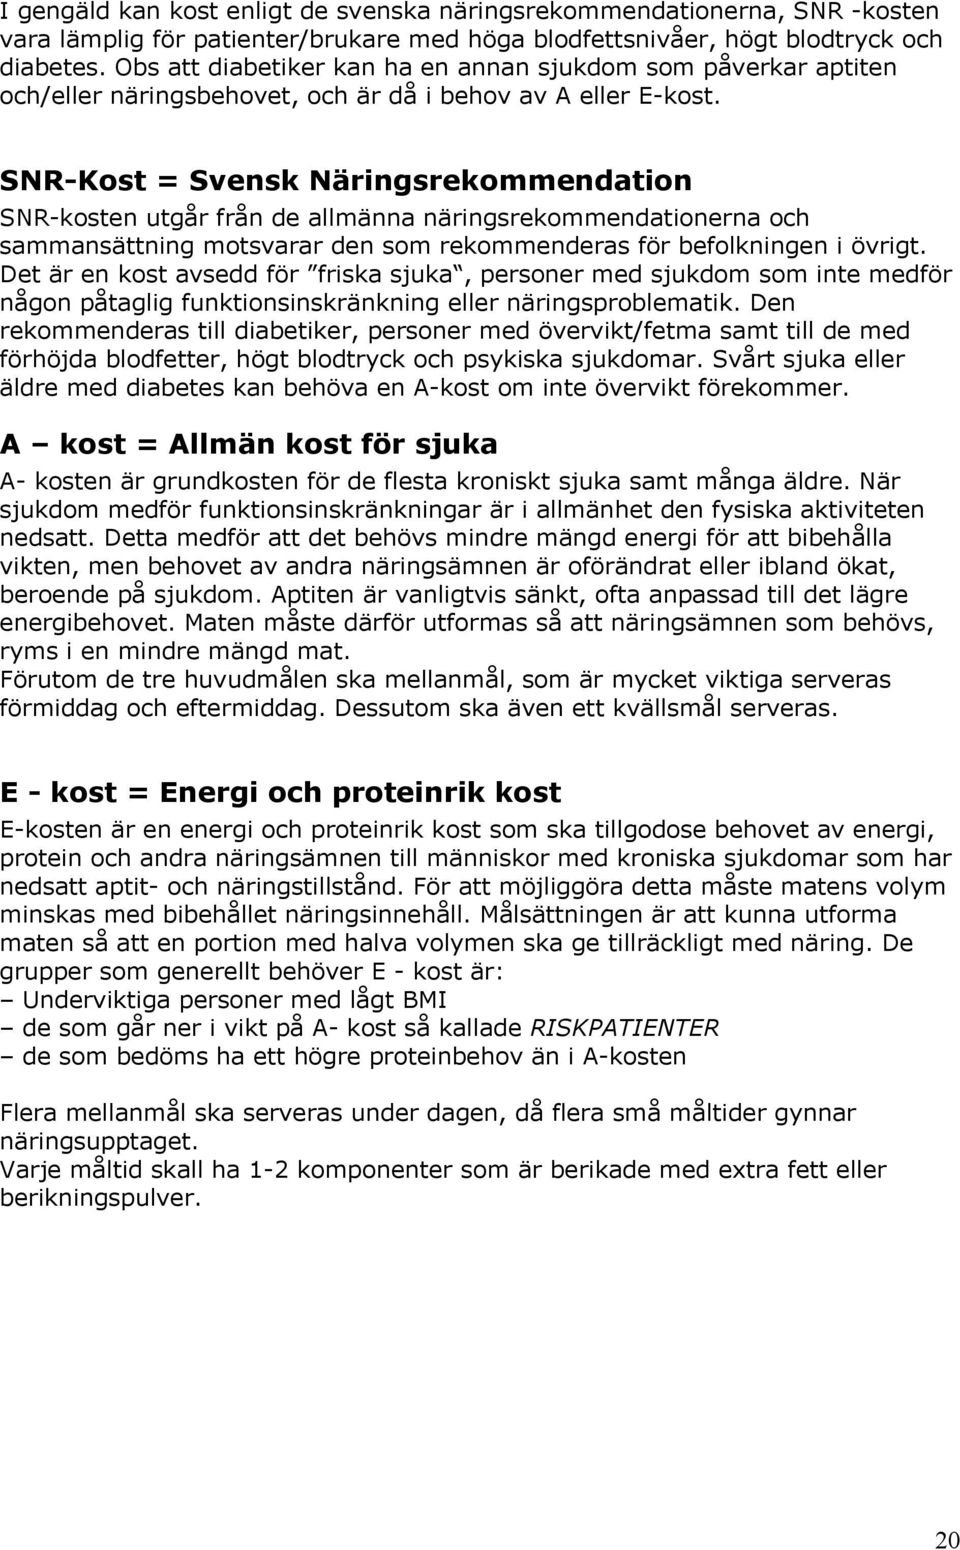 SNR-Kost = Svensk Näringsrekommendation SNR-kosten utgår från de allmänna näringsrekommendationerna och sammansättning motsvarar den som rekommenderas för befolkningen i övrigt.